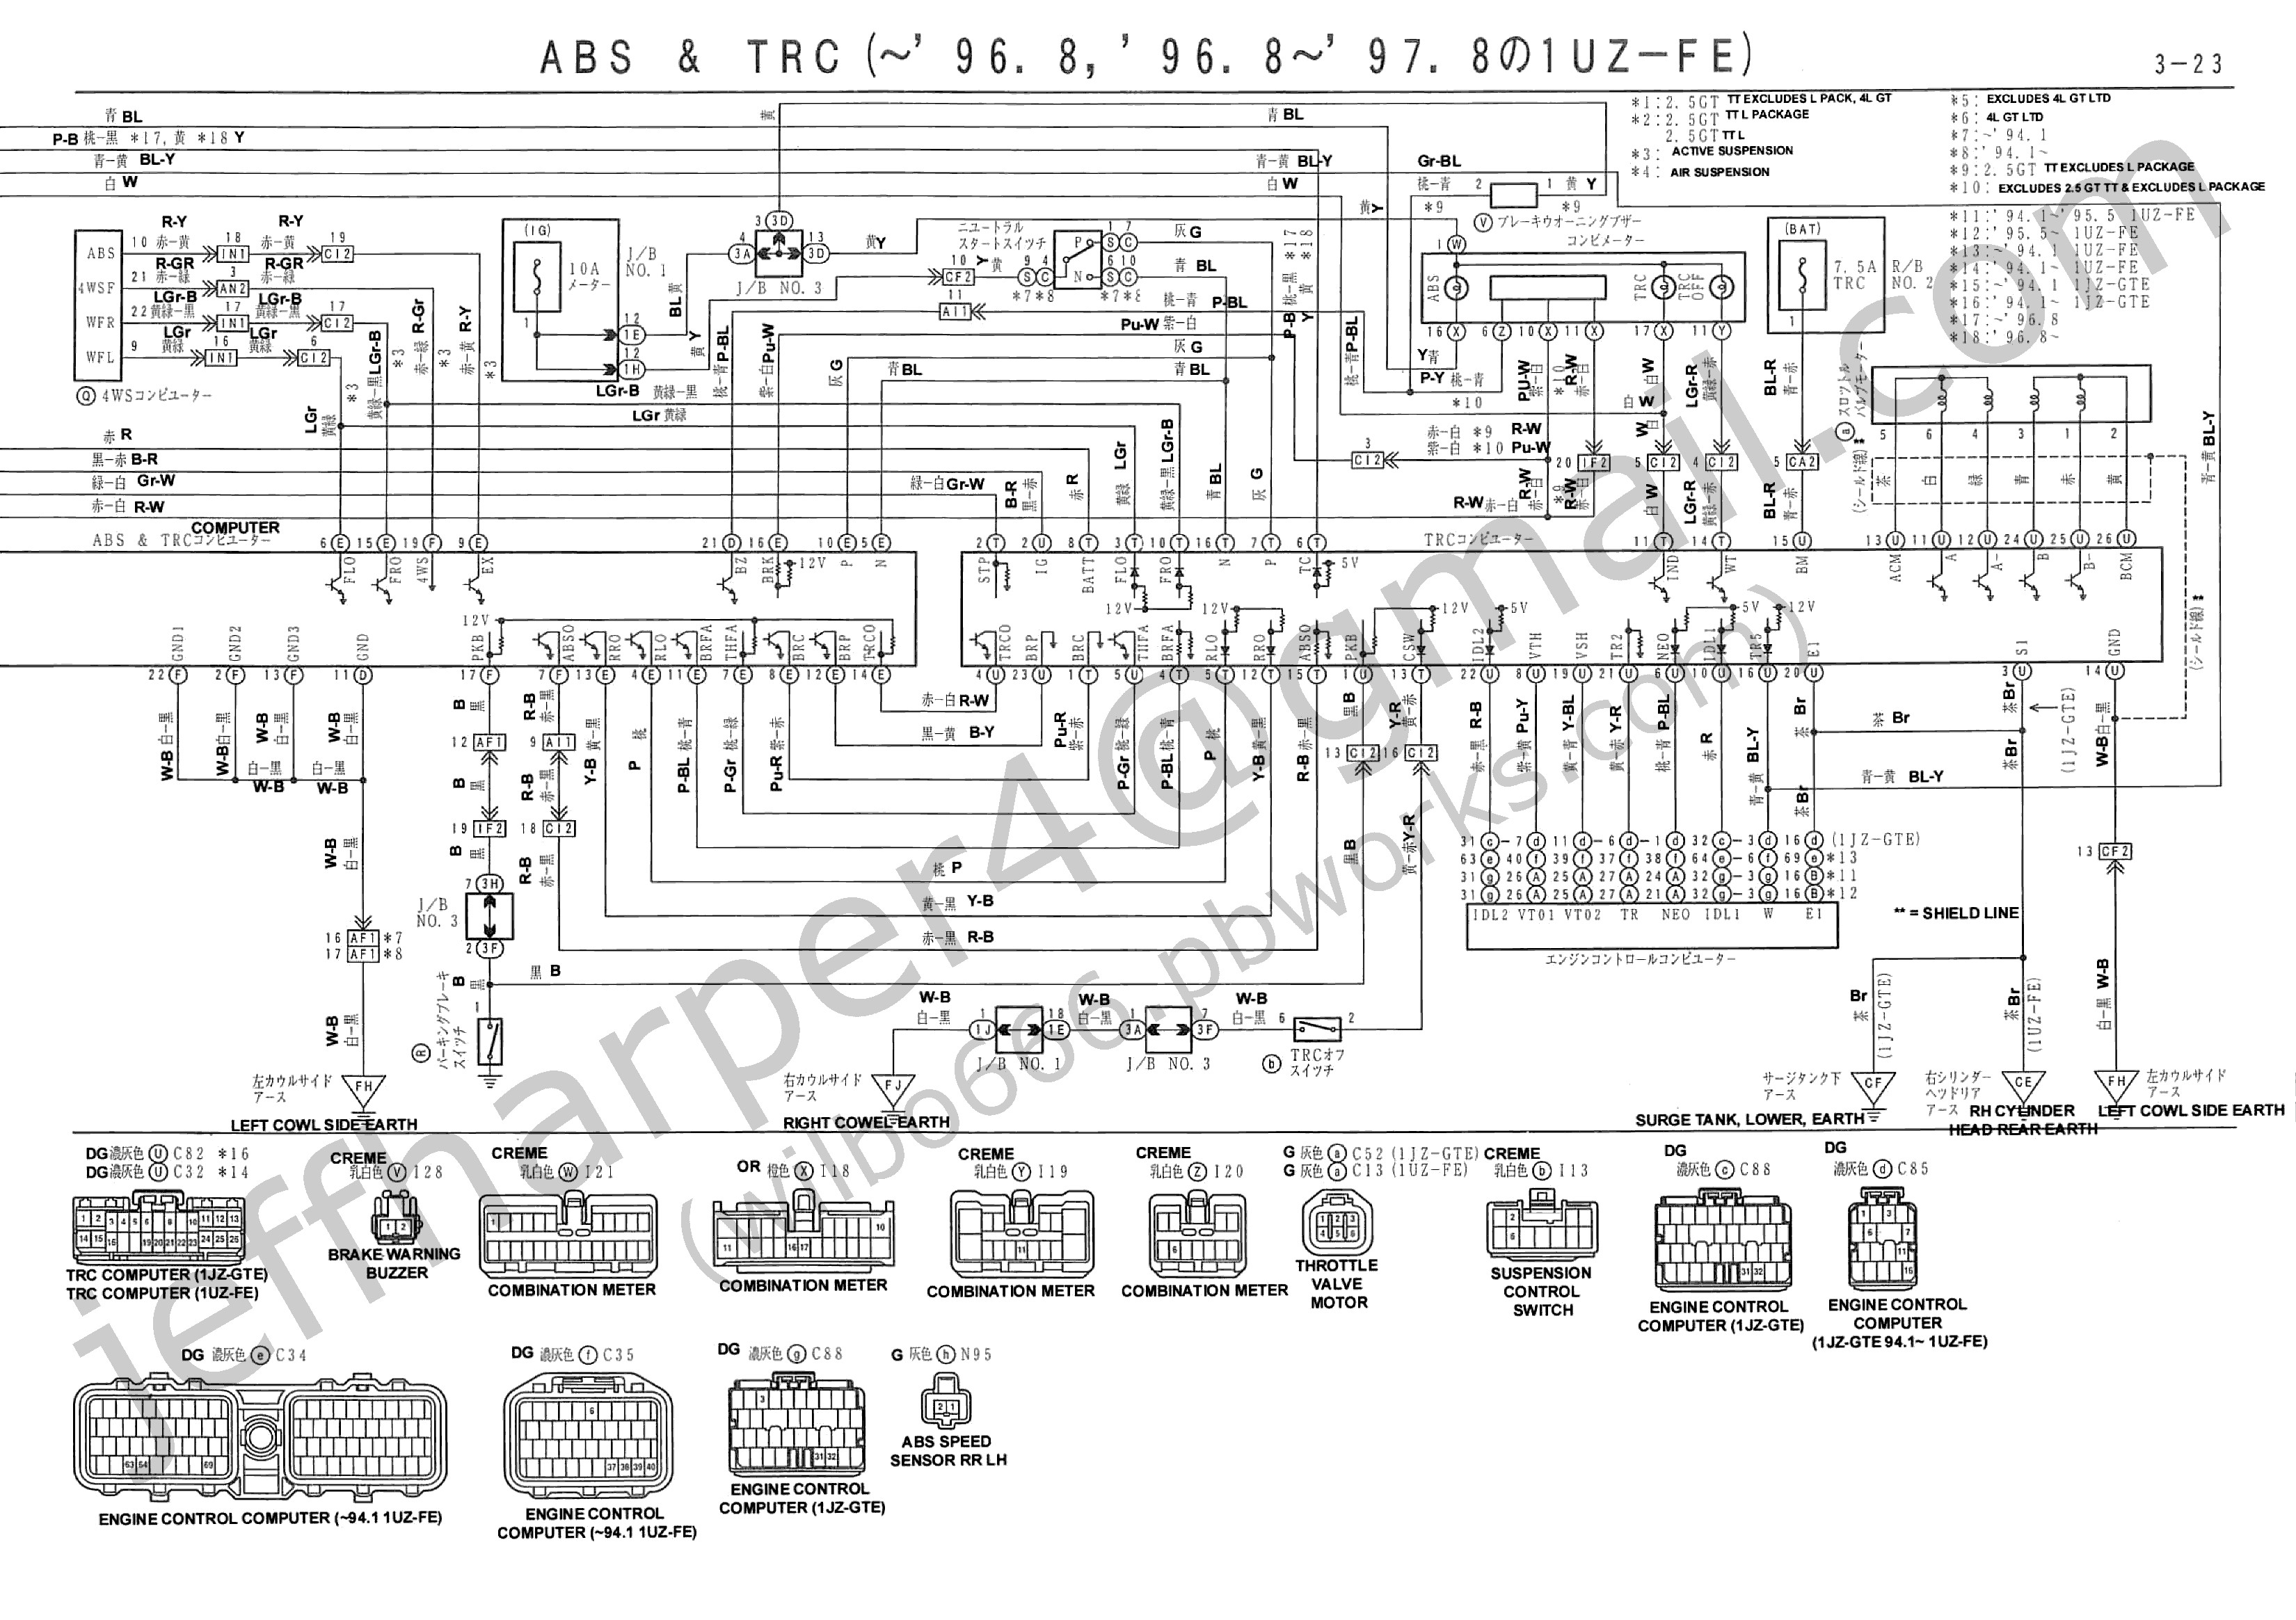 Chevy Power Steering Pump Diagram 1jz Series Ecu Wiring Harness Wiring Info • Of Chevy Power Steering Pump Diagram